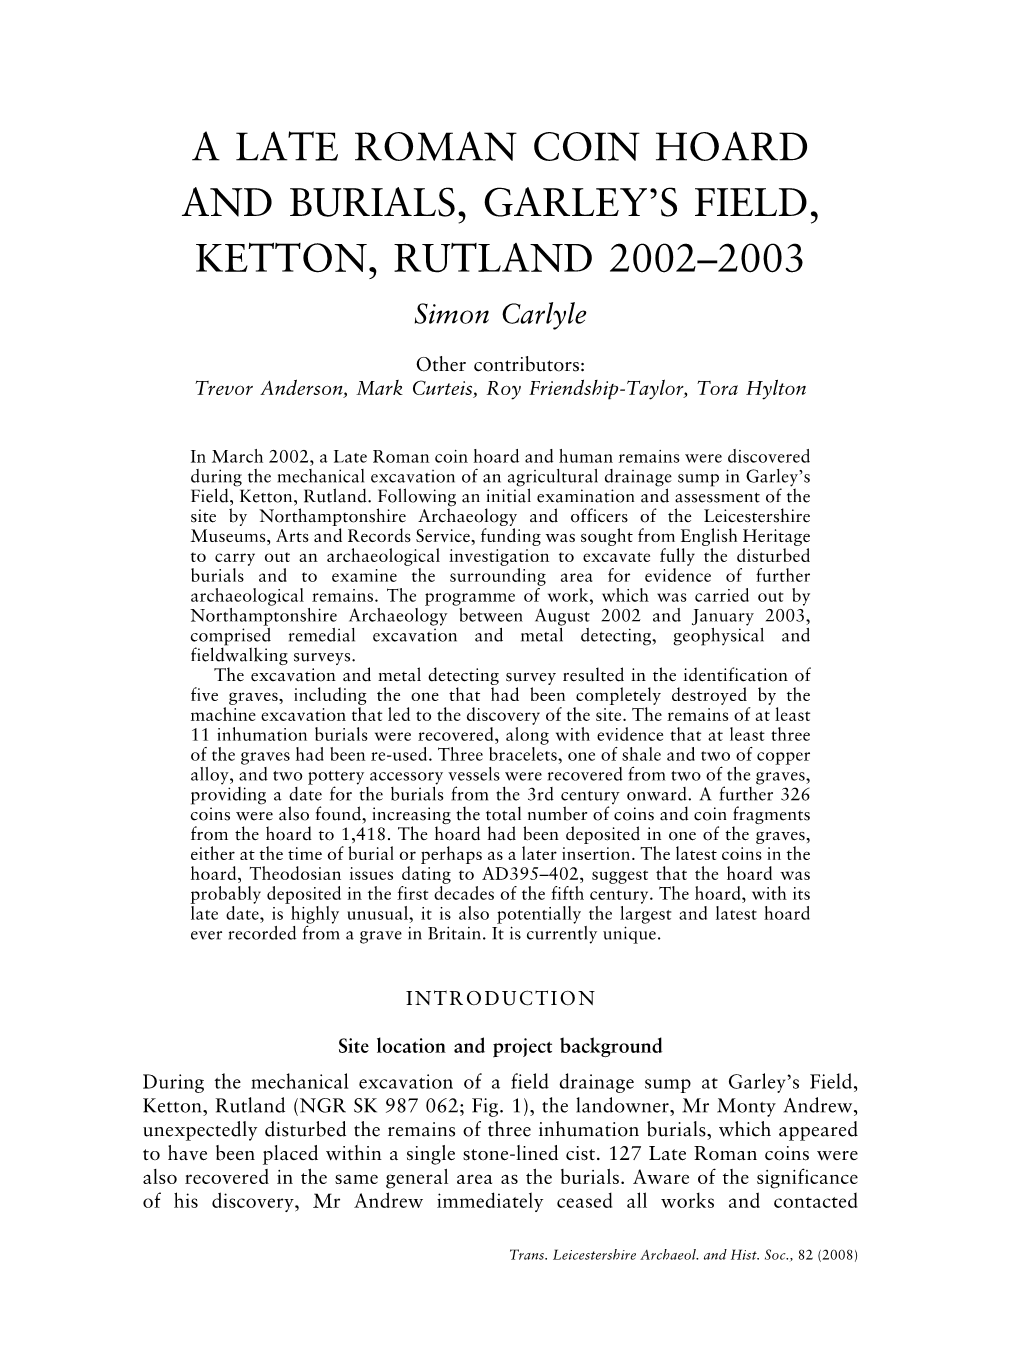 A Late Roman Coin Hoard and Burials, Garley's Field, Ketton, Rutland Pp